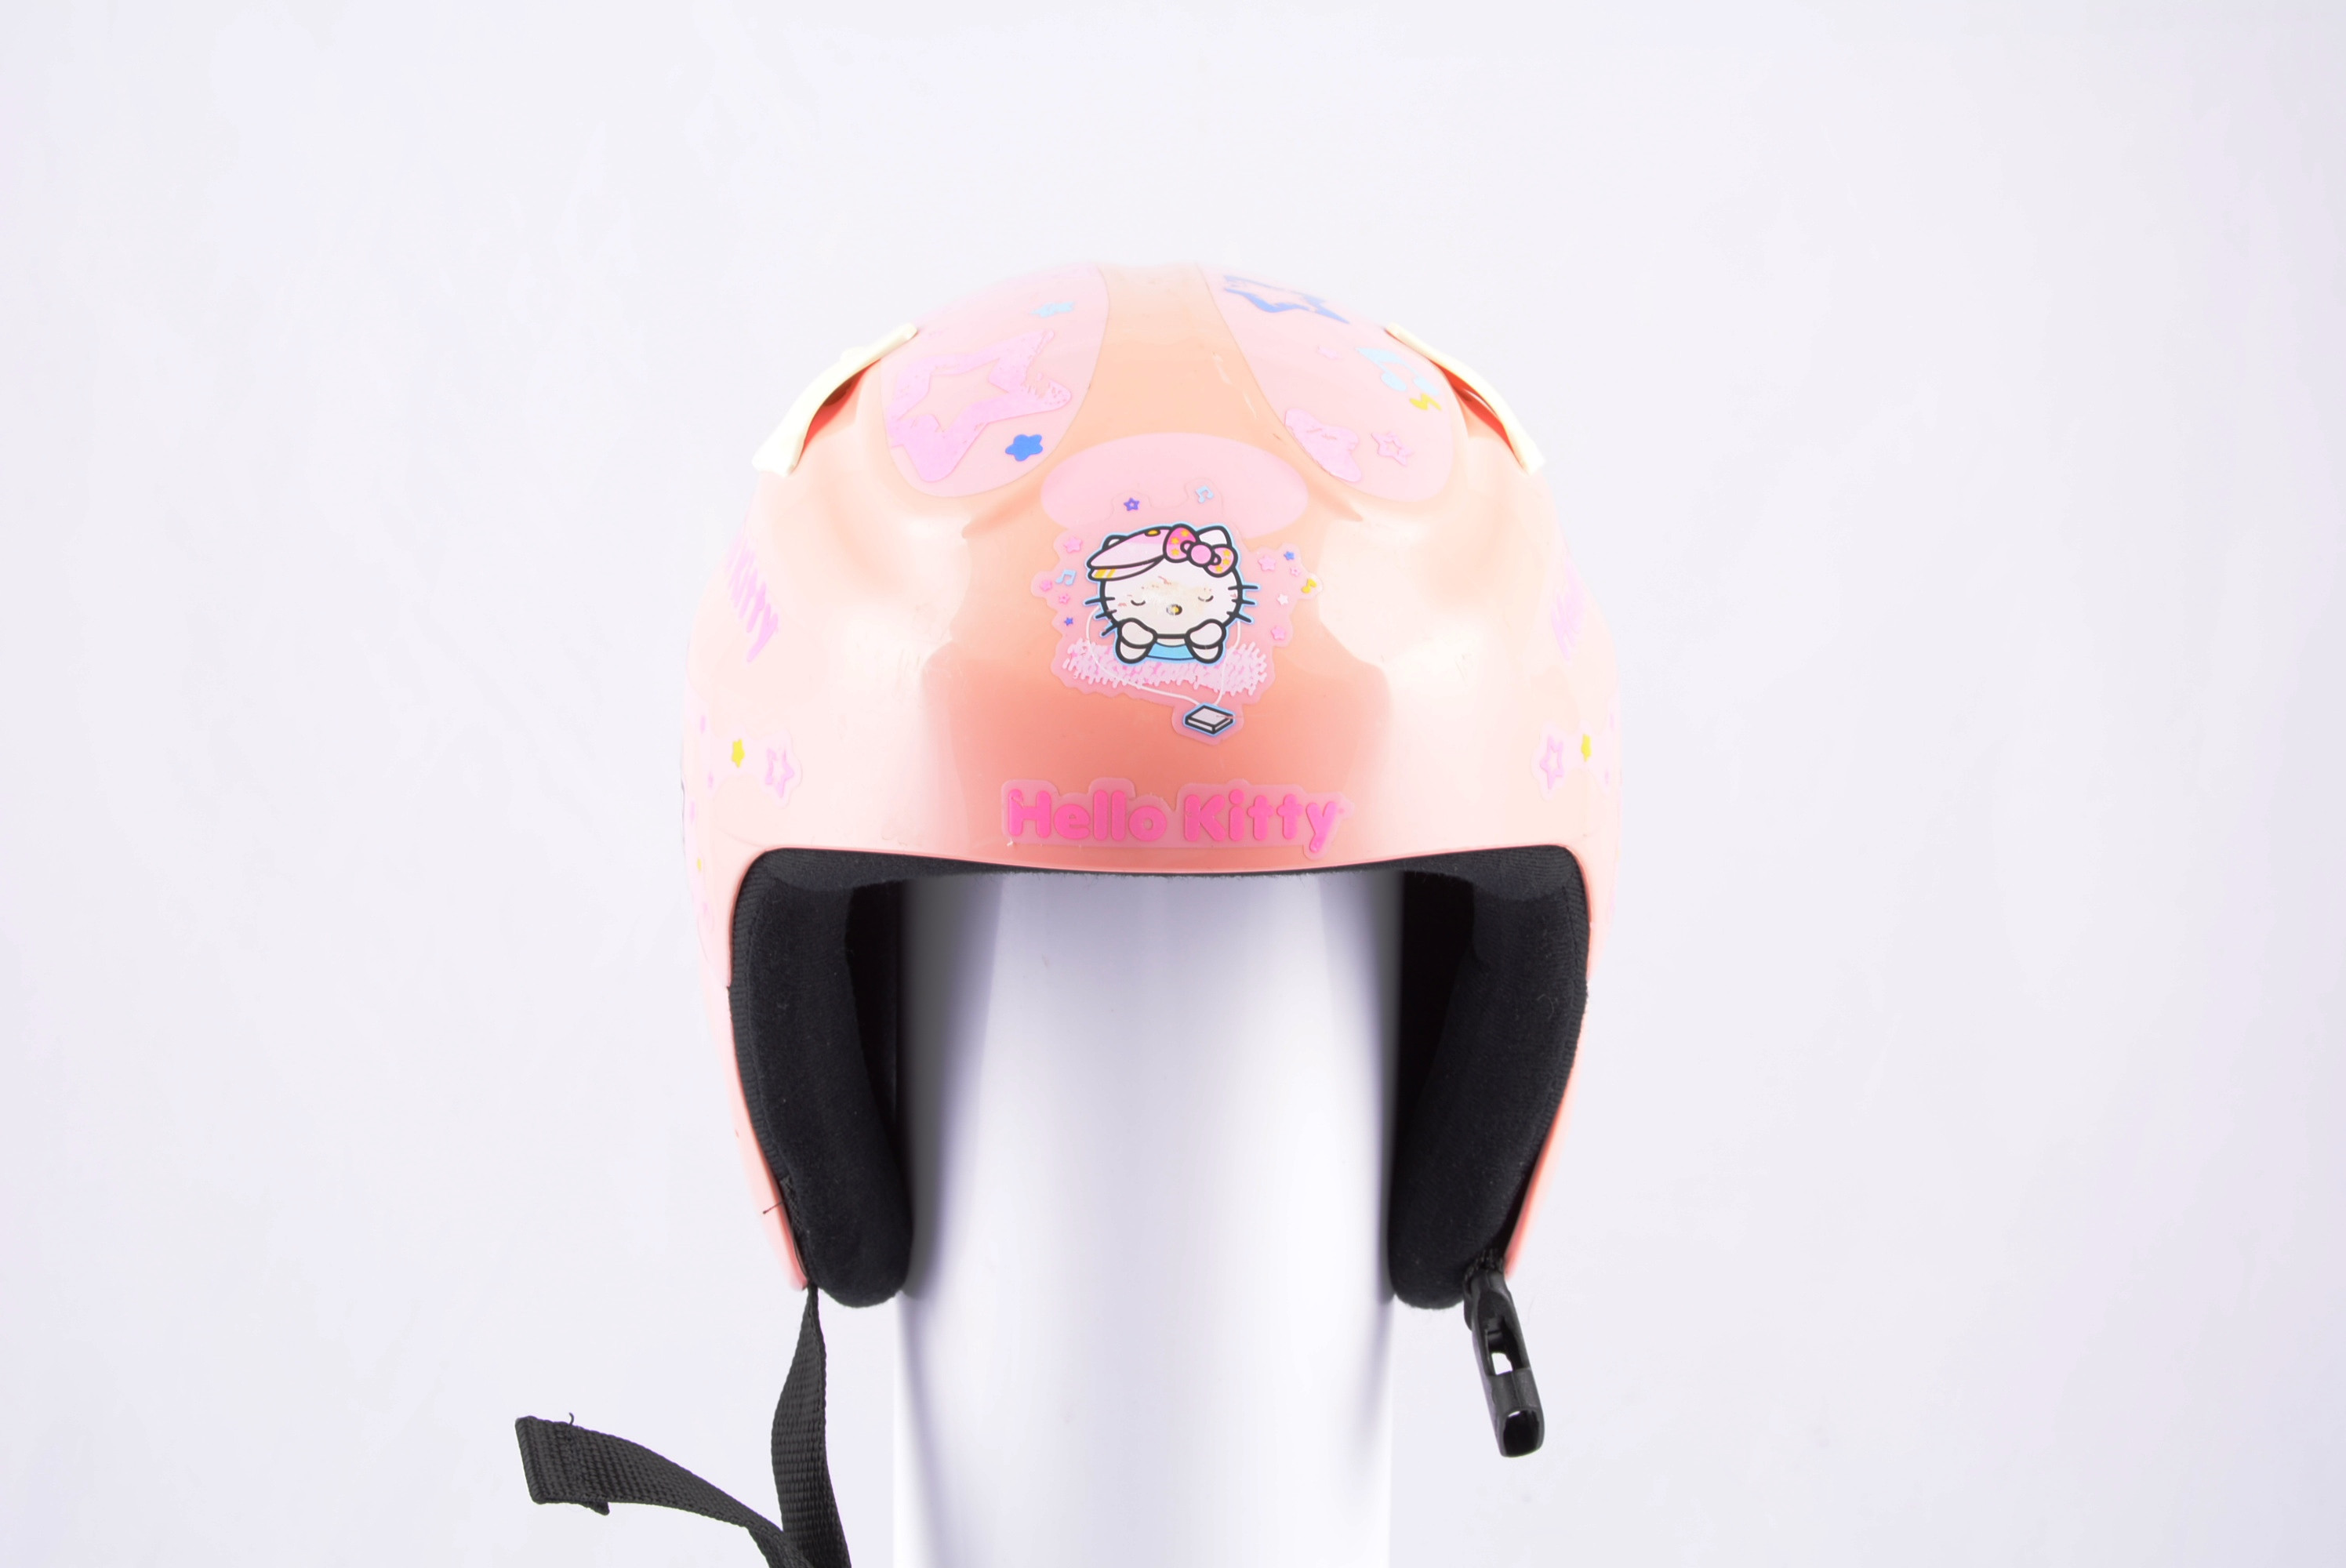 casco de esquí/snowboard HELLO KITTY STERN pink ( condición ) -